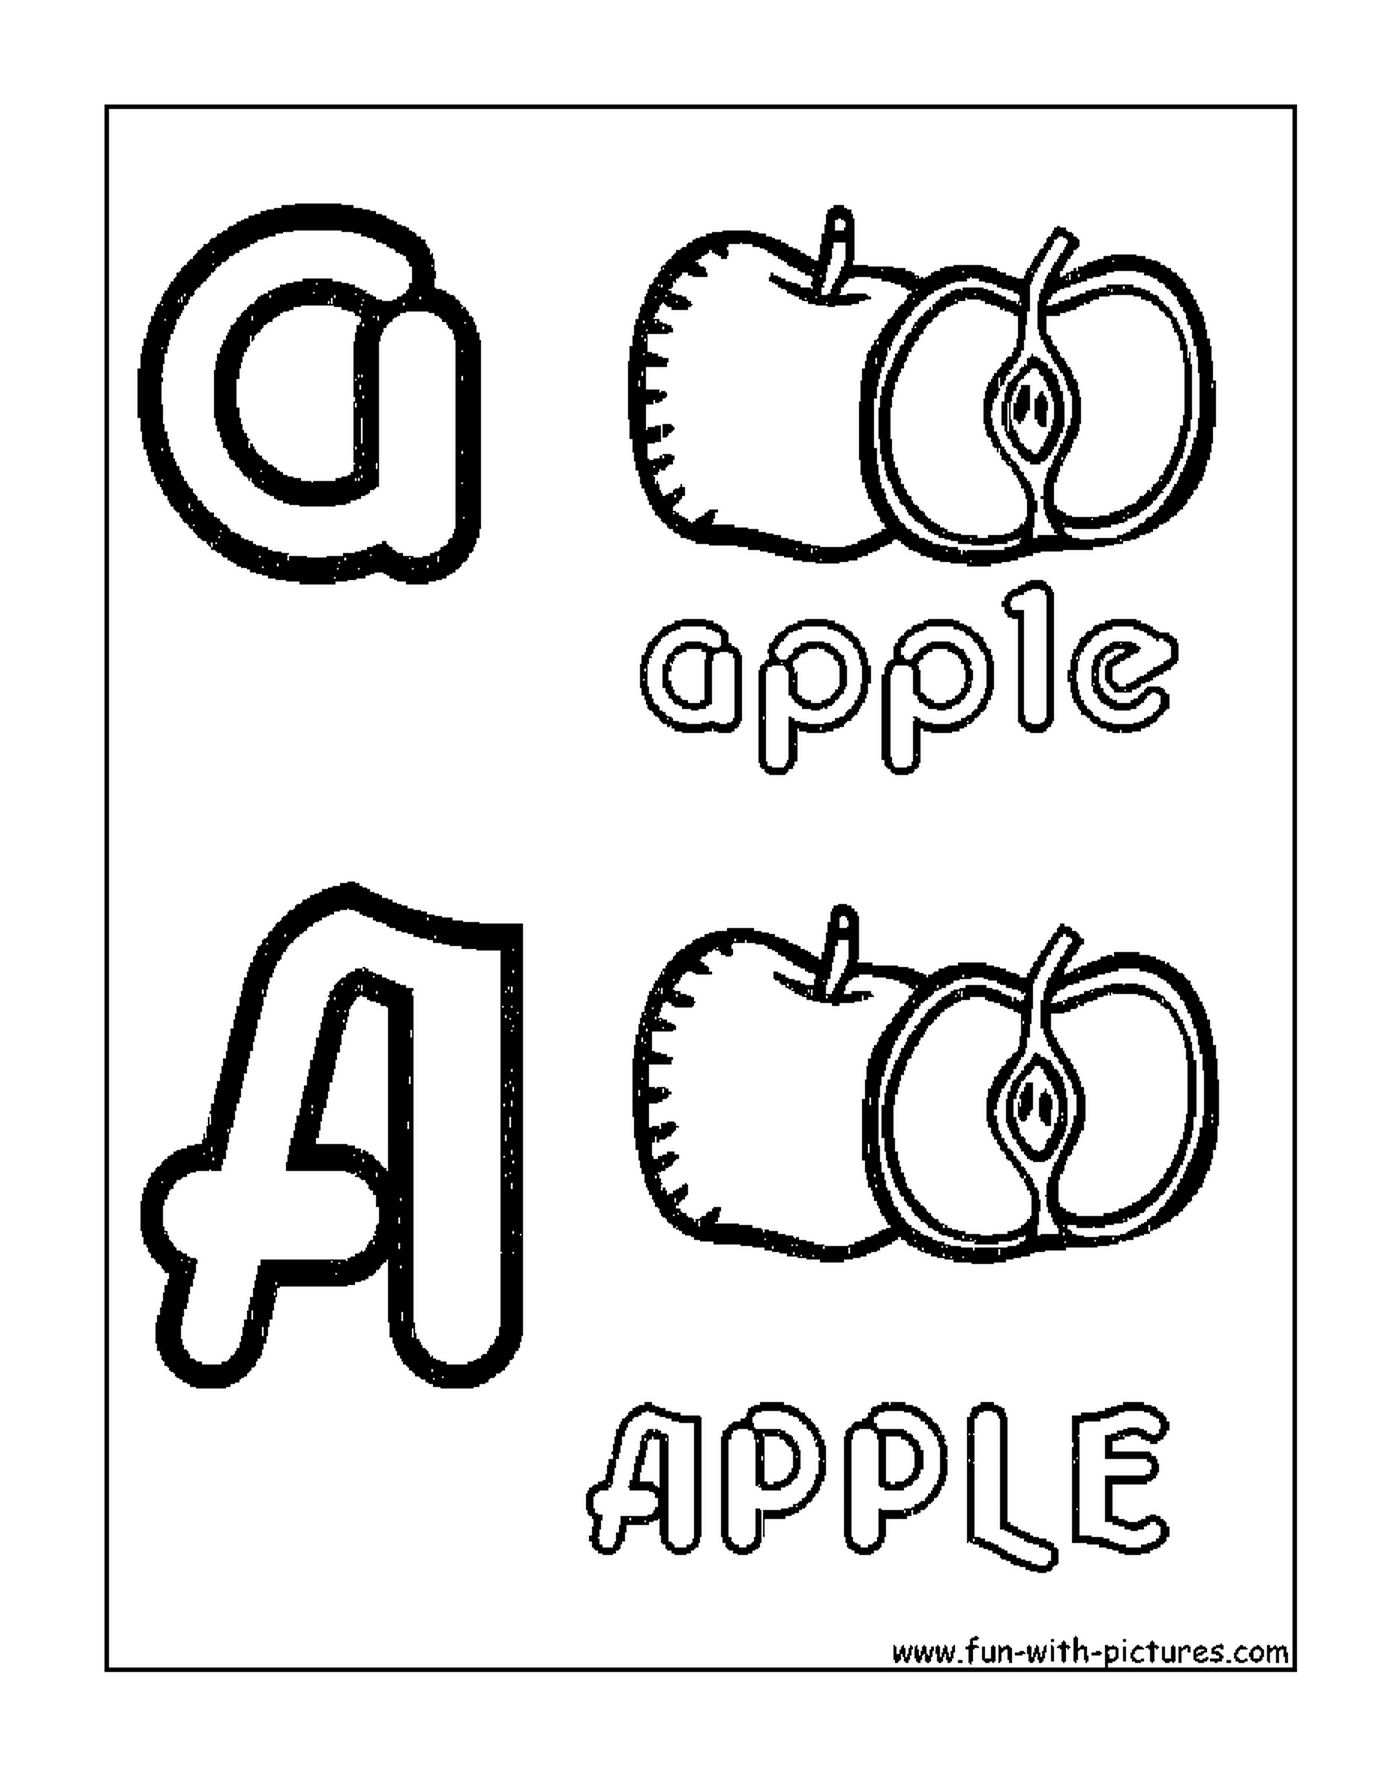  maçã no alfabeto 